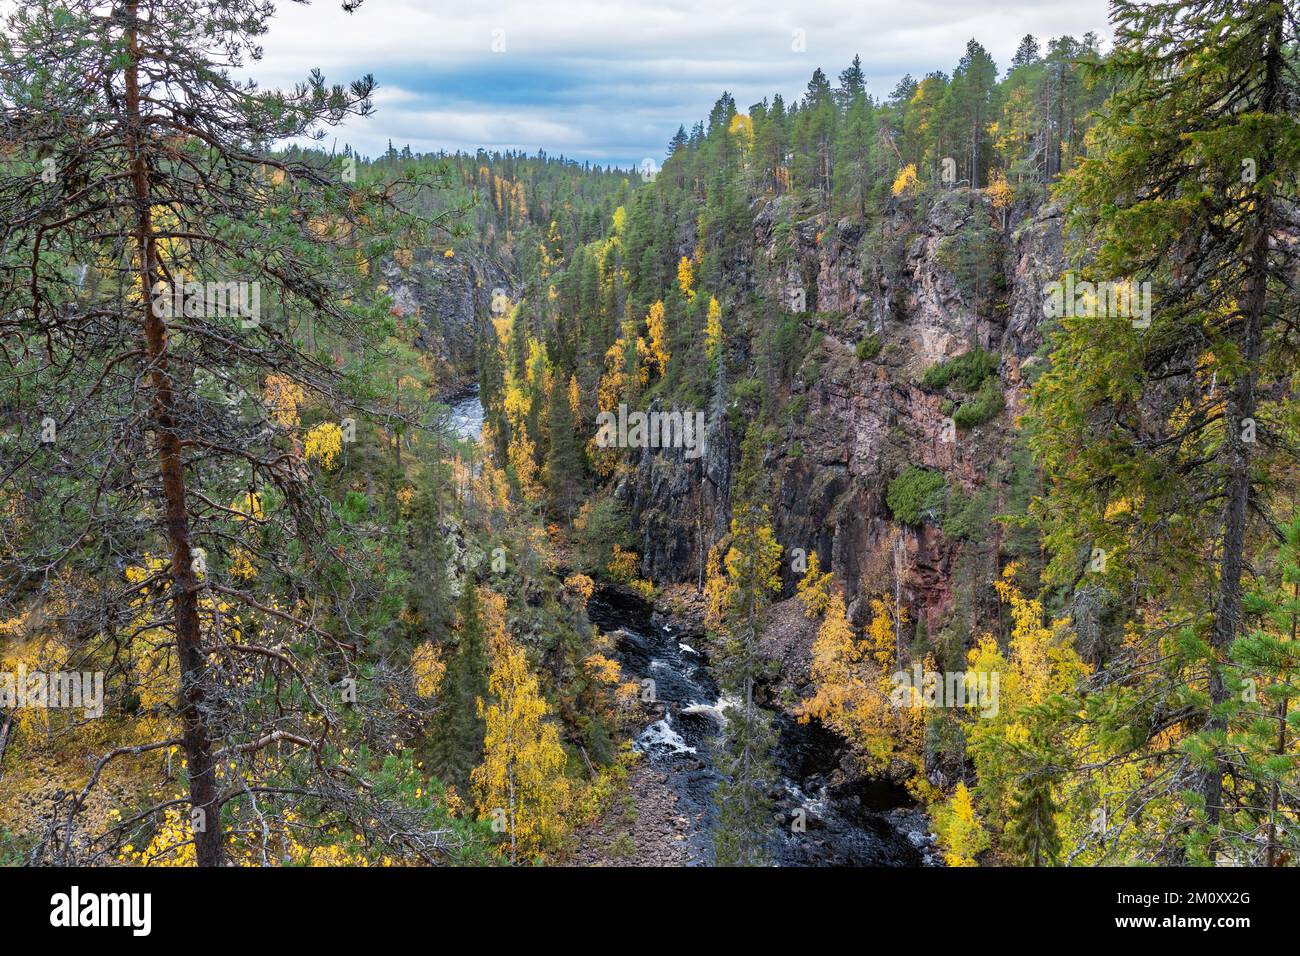 L'eau s'écoulant dans les rapides d'un canyon dans le parc national d'Oulanka, dans le nord de la Finlande Banque D'Images